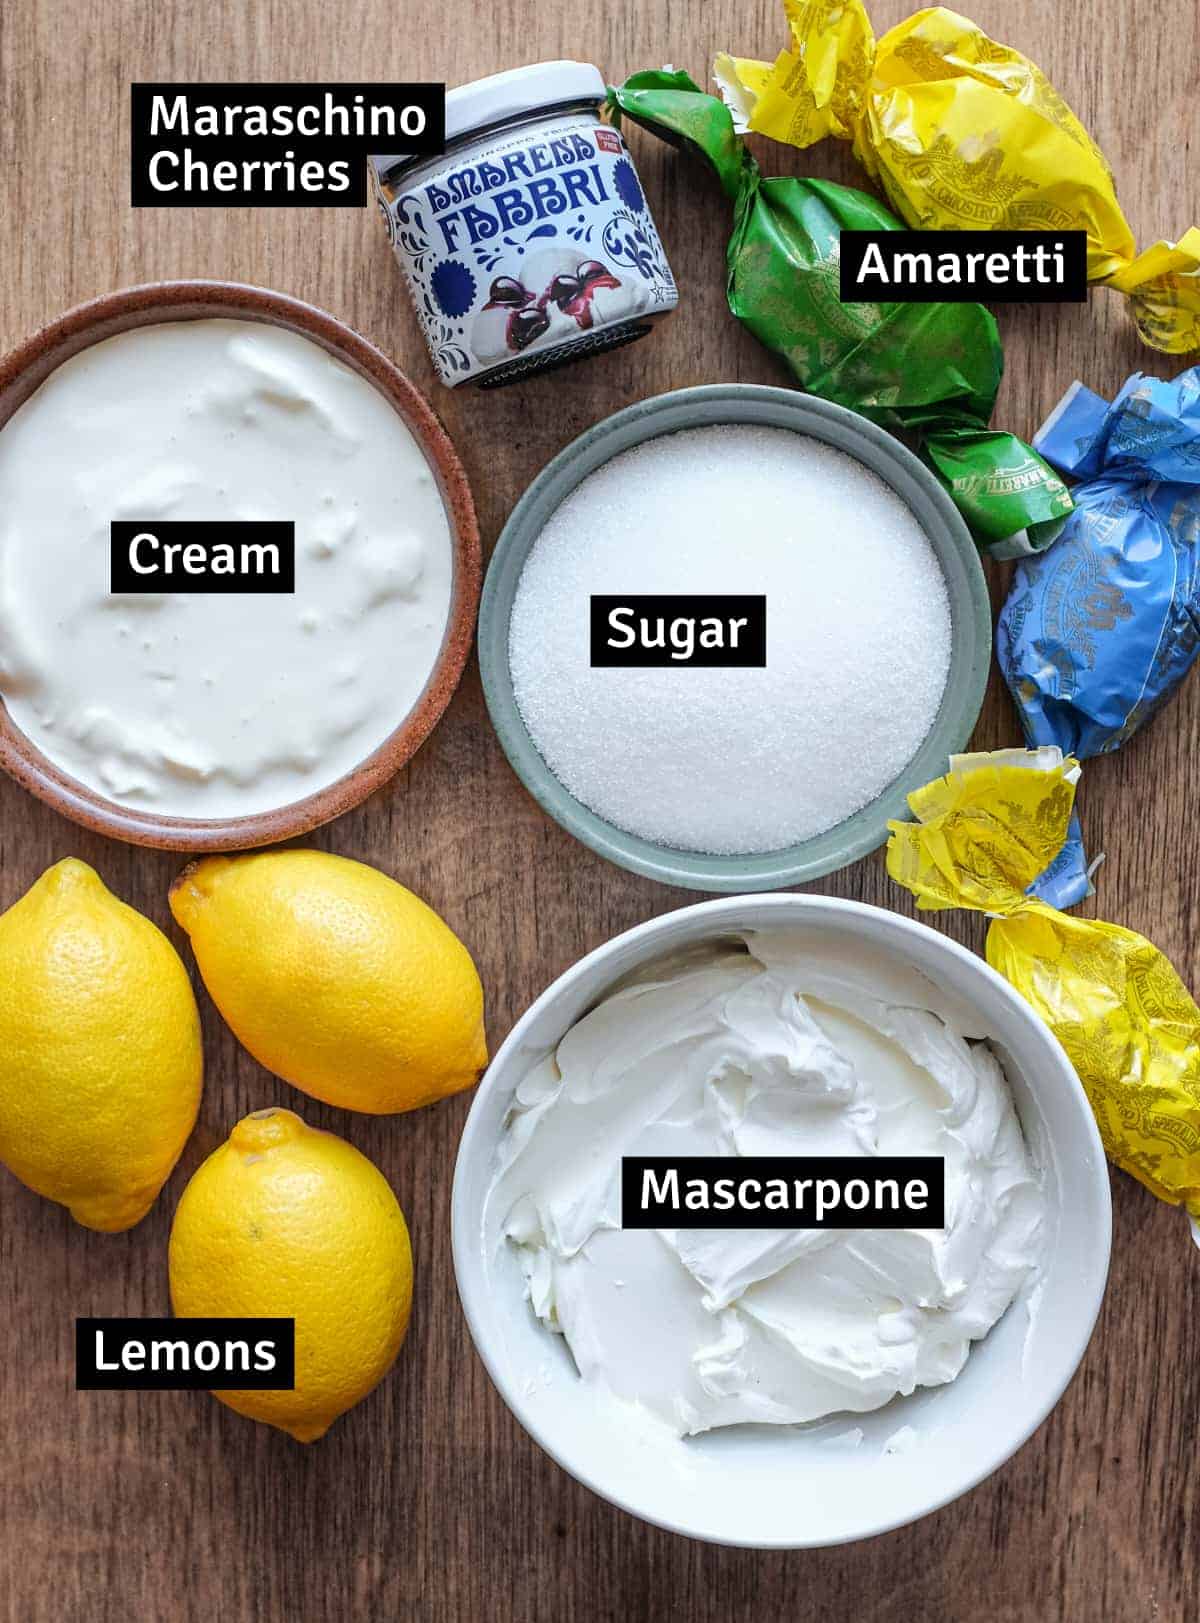 The ingredients for Italian Lemon Cream: Mascarpone, cream, sugar, lemon, maraschino cherries and amaretti biscuits.